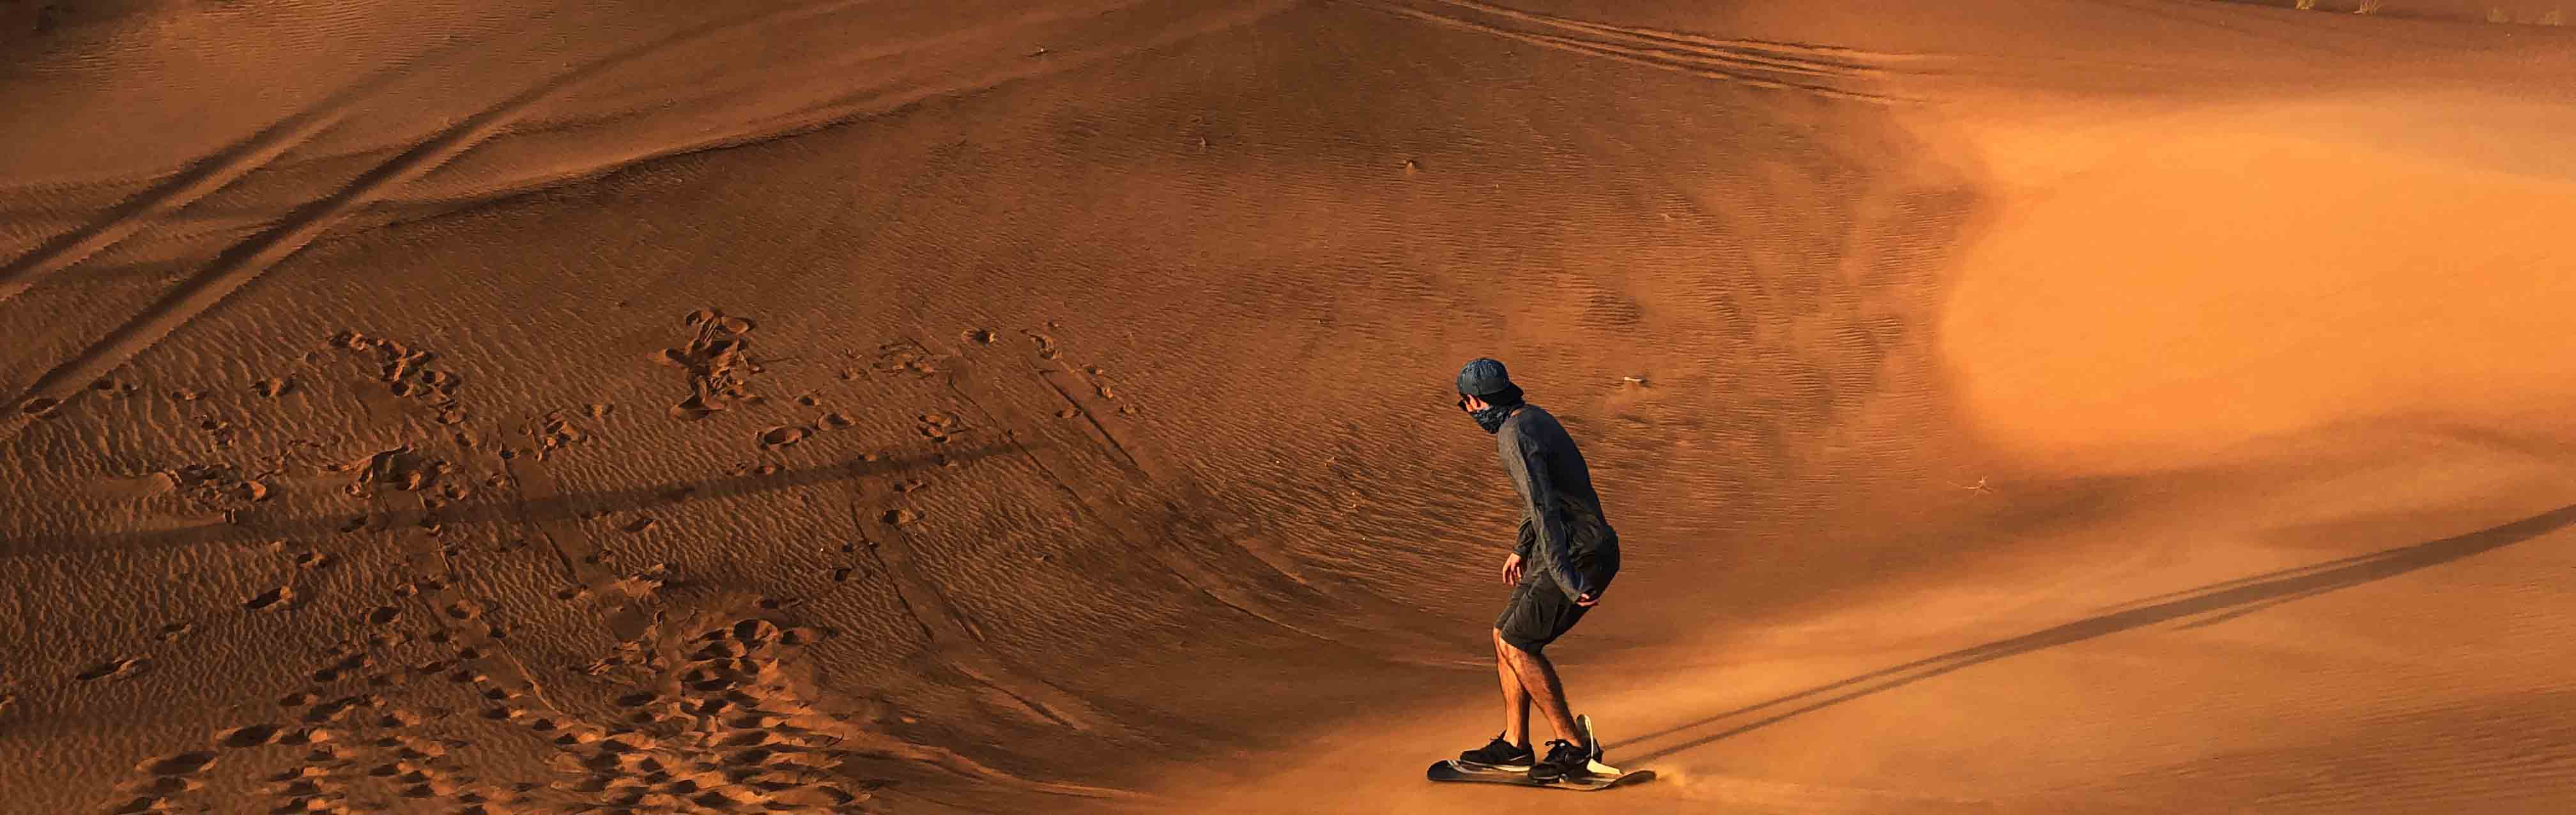 Desert Safari & Sandboarding